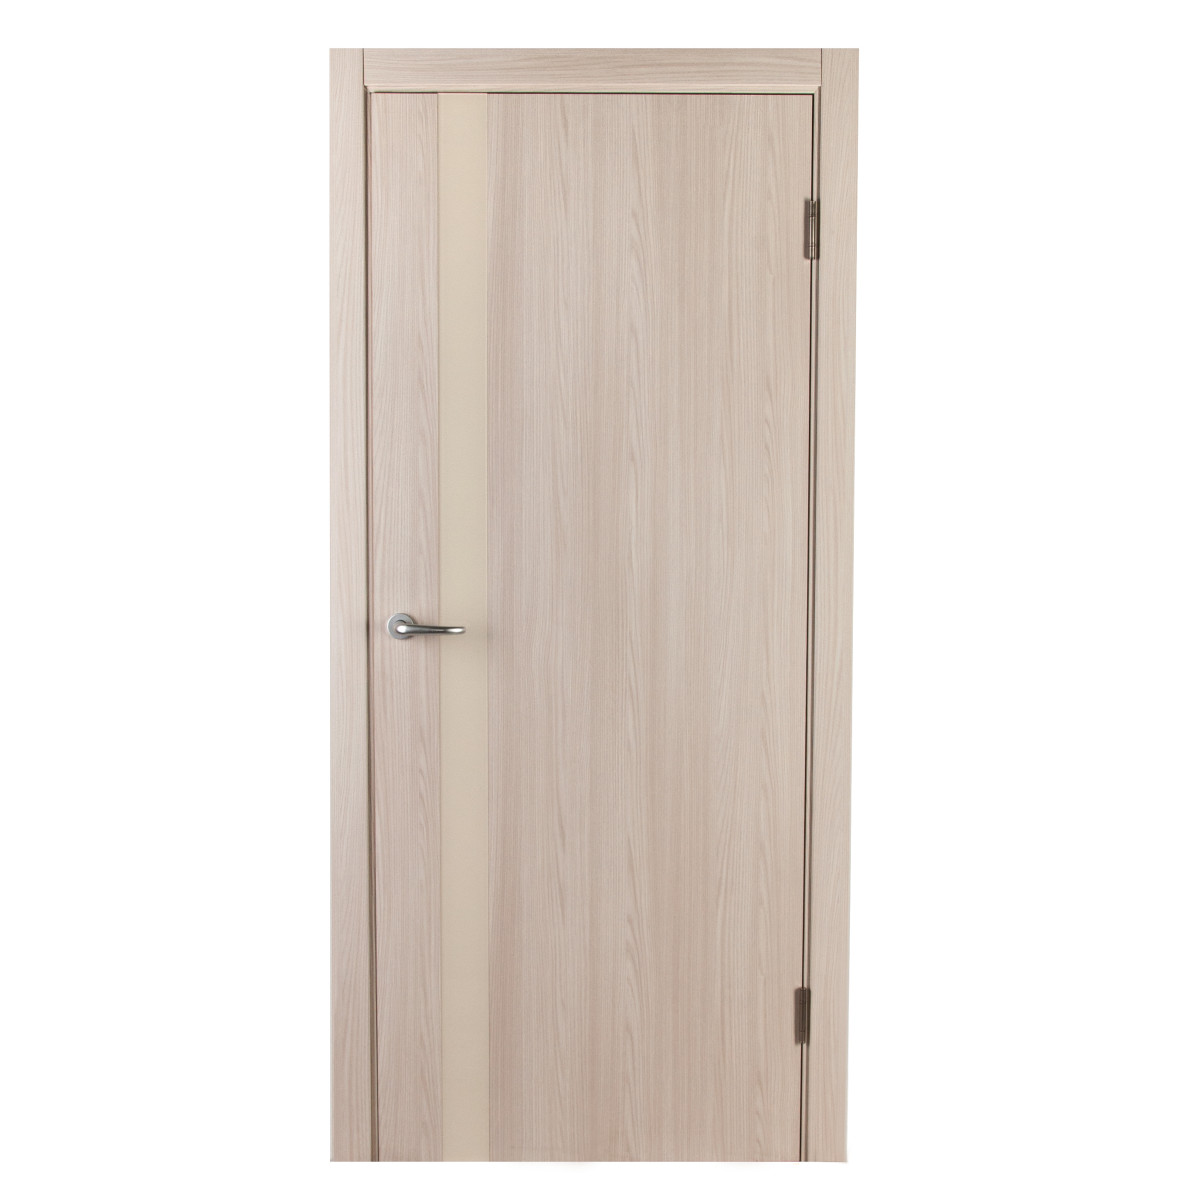 Дверь межкомнатная глухая с замком и петлями в комплекте Мирра 80x200 см, Hardflex, цвет ясень бора